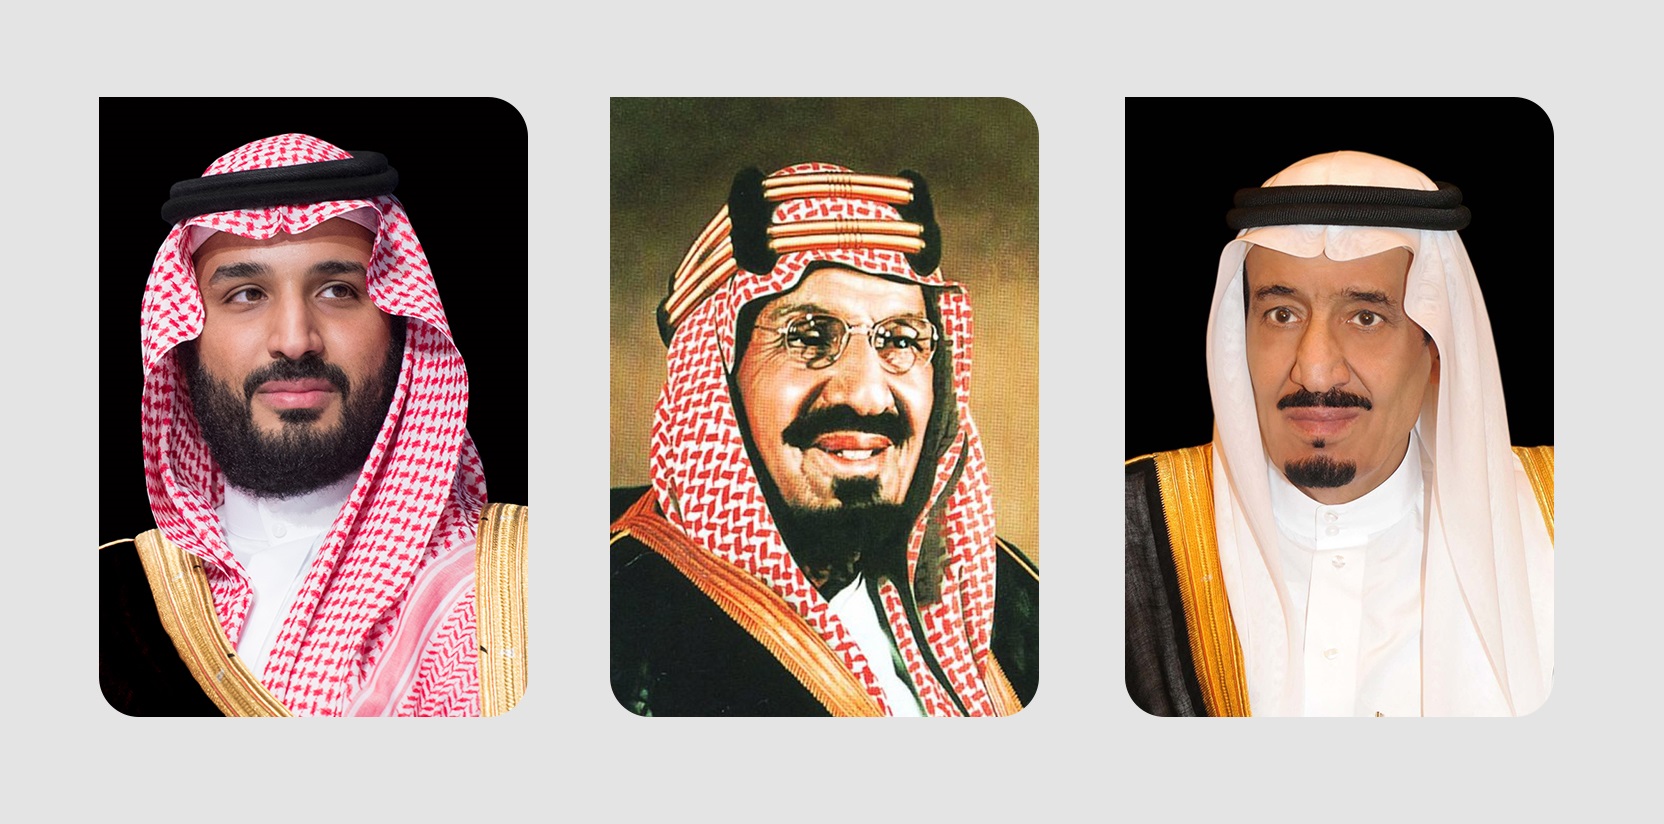 روتانا | مؤسس الدولة السعودية الإمام محمد بن سعود هو الجد الرابع للملك  عبدالعزيز آل سعود - رحمهما الله- والجد الخامس لخادم الحرمين الشريفين الملك سلمان  بن عبدالعزيز آل سعود، والجد السادس